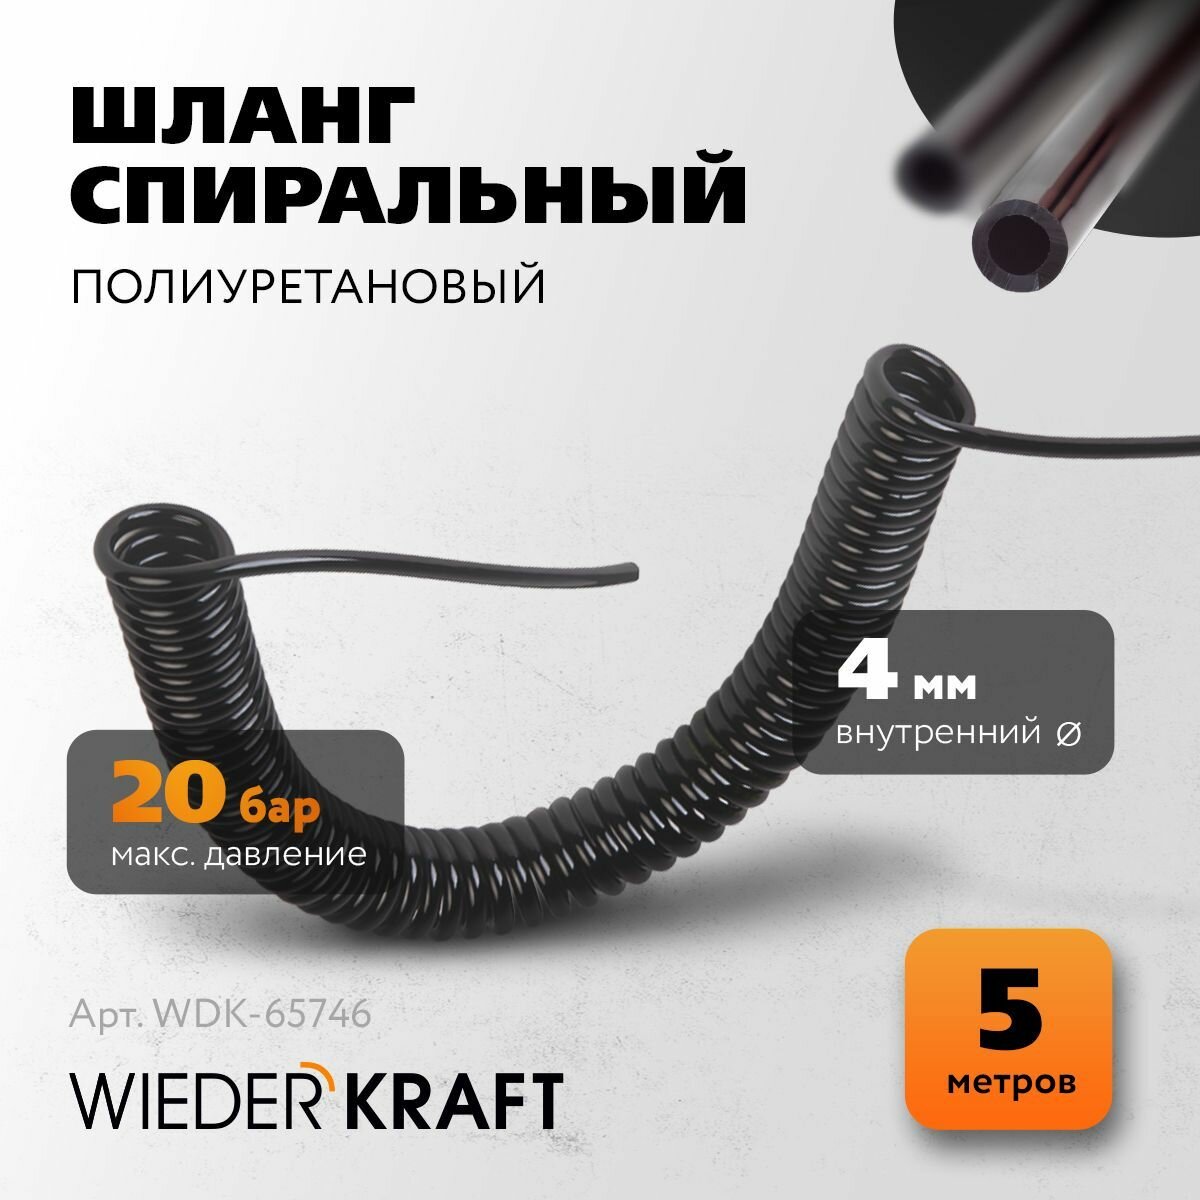 Шланг спиральный полиуретан WIEDERKRAFT 4*6mm 5 метров WDK-65746